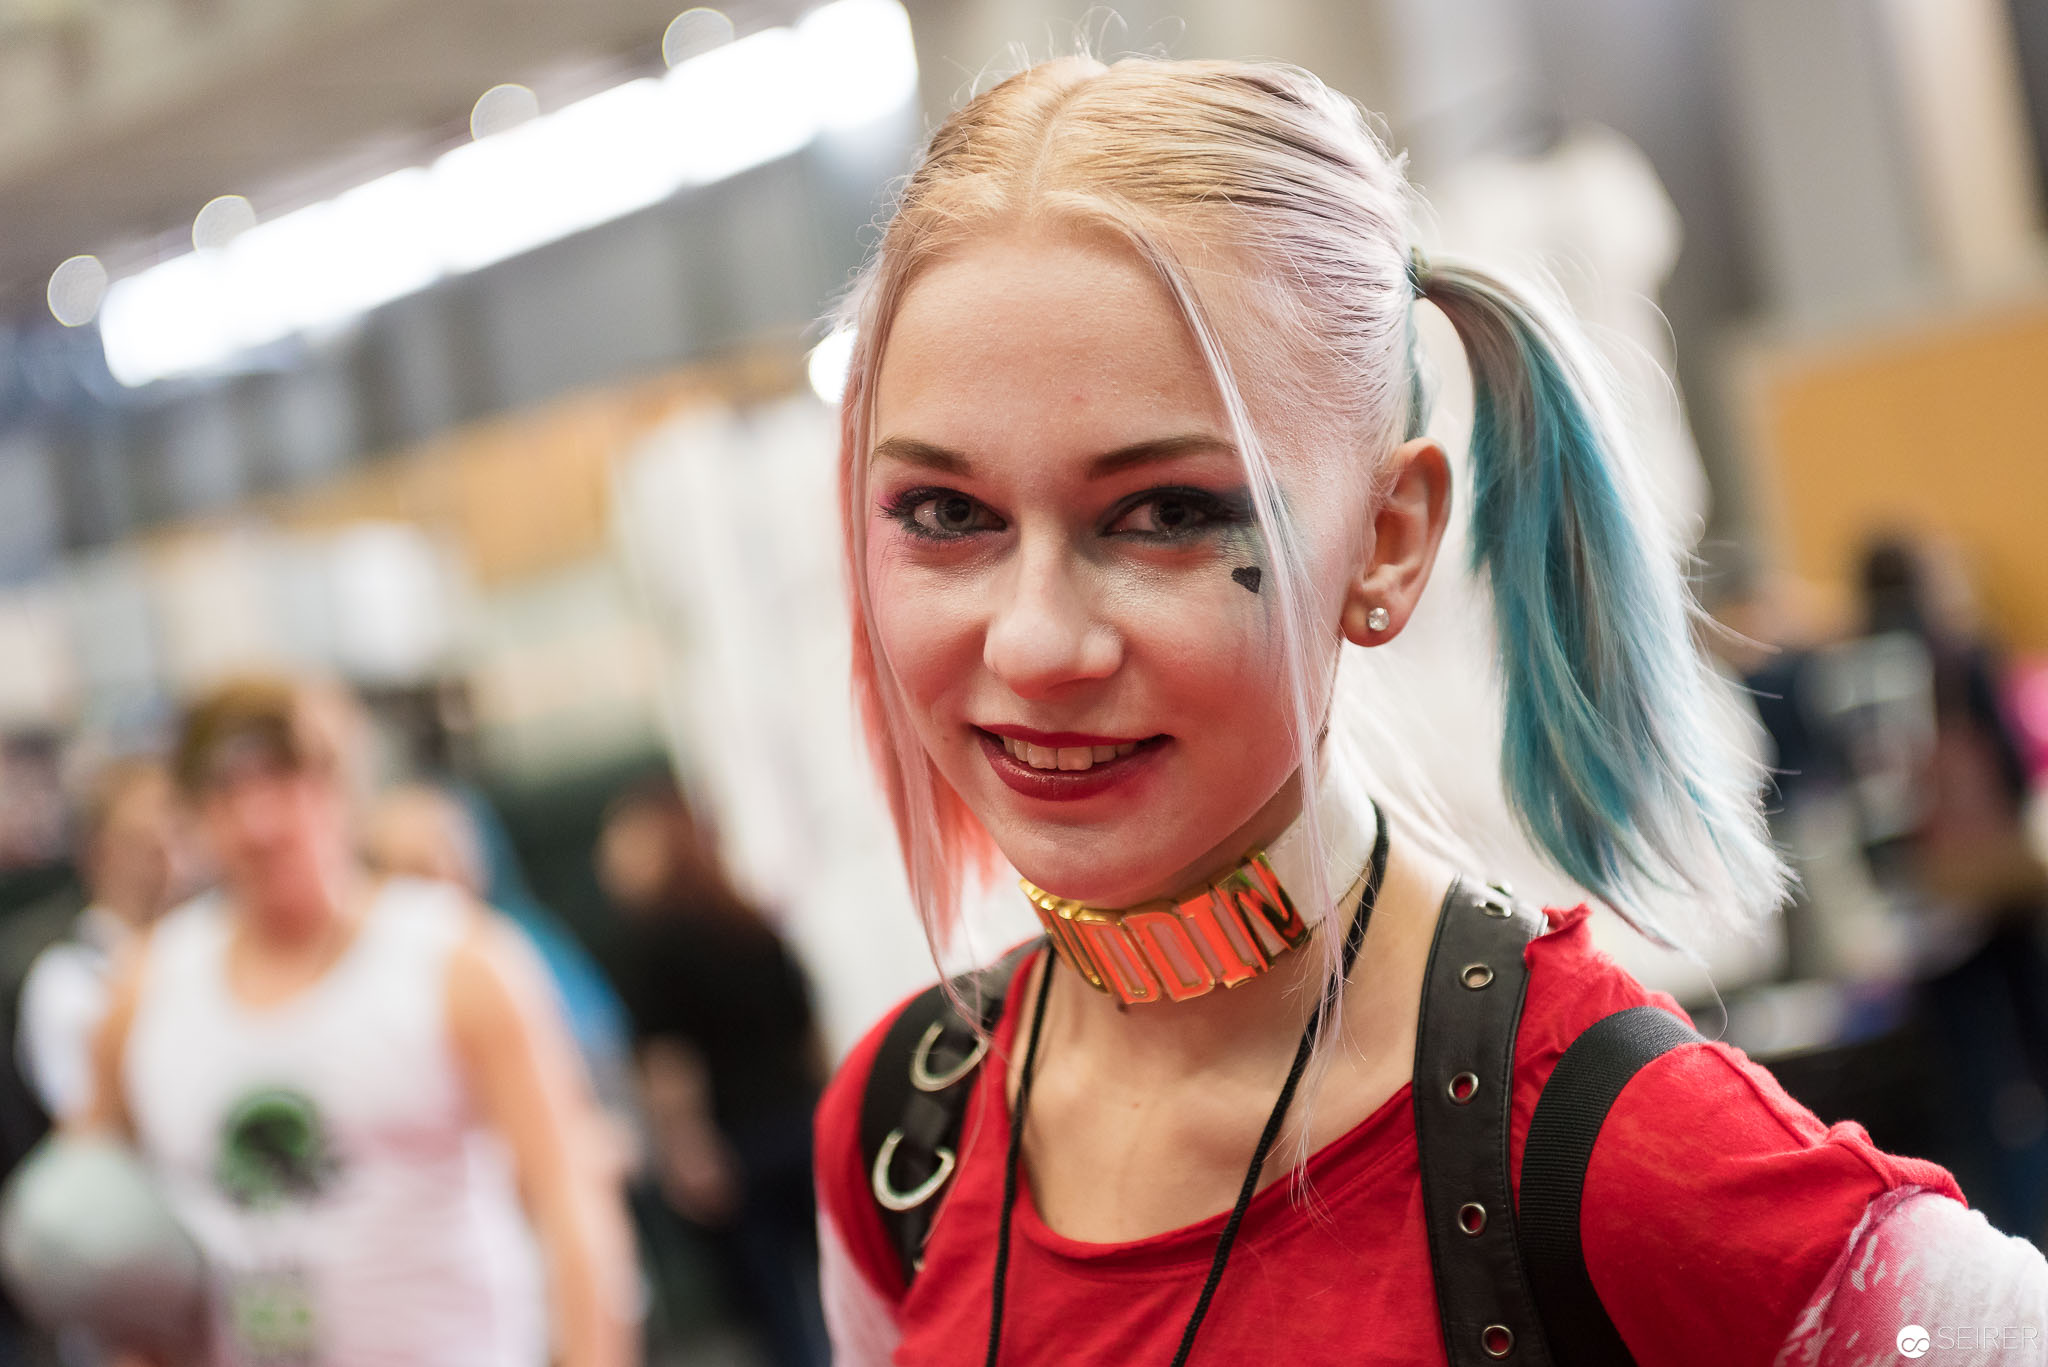  Vienna ComicCon 2016 - (c) Seirer Photography 